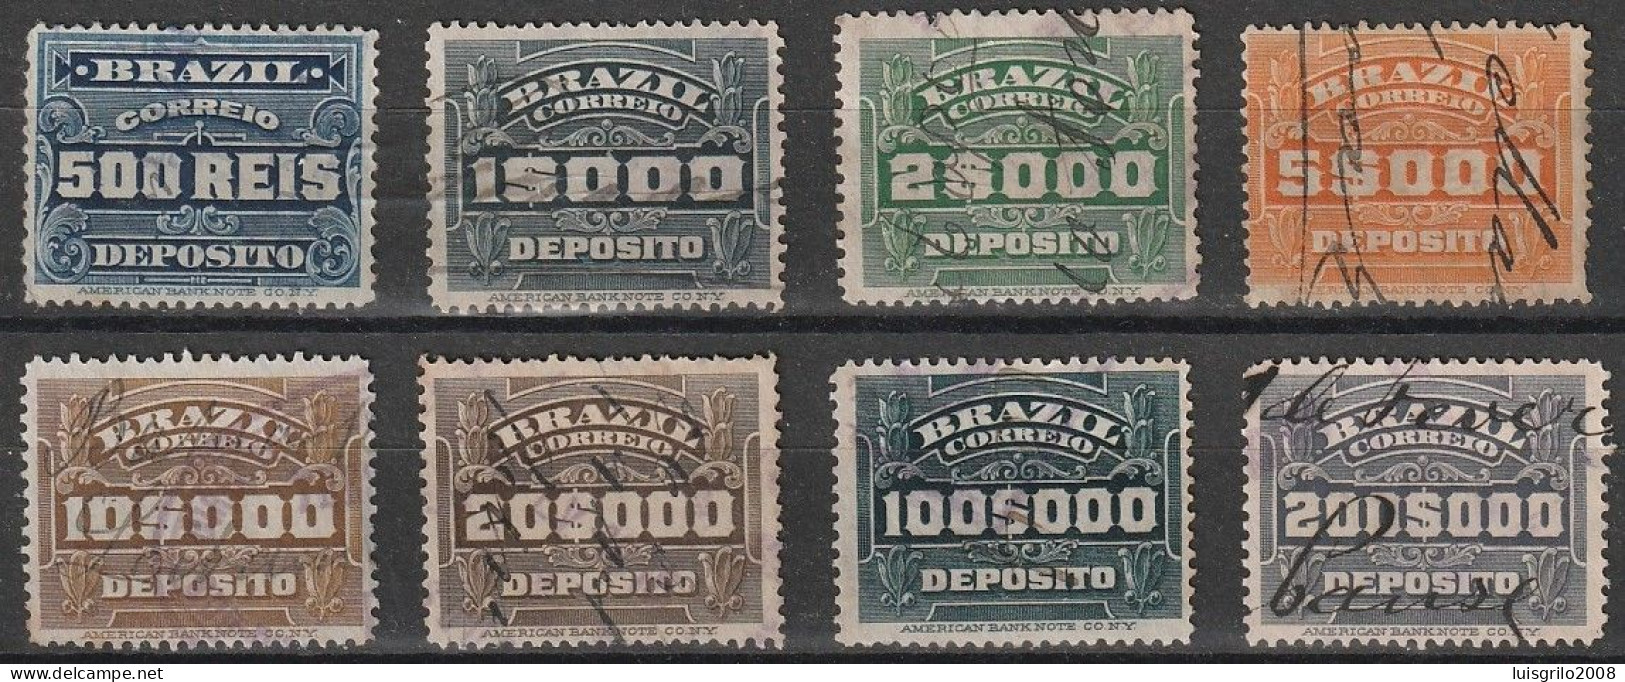 Revenue/ Fiscaux, Brazil 1920 - Depósito, Receita Fiscal -|- 500 Rs, 1$000, 2$000, 5$000, 10$000, 20$000, 100$000, 200$0 - Impuestos